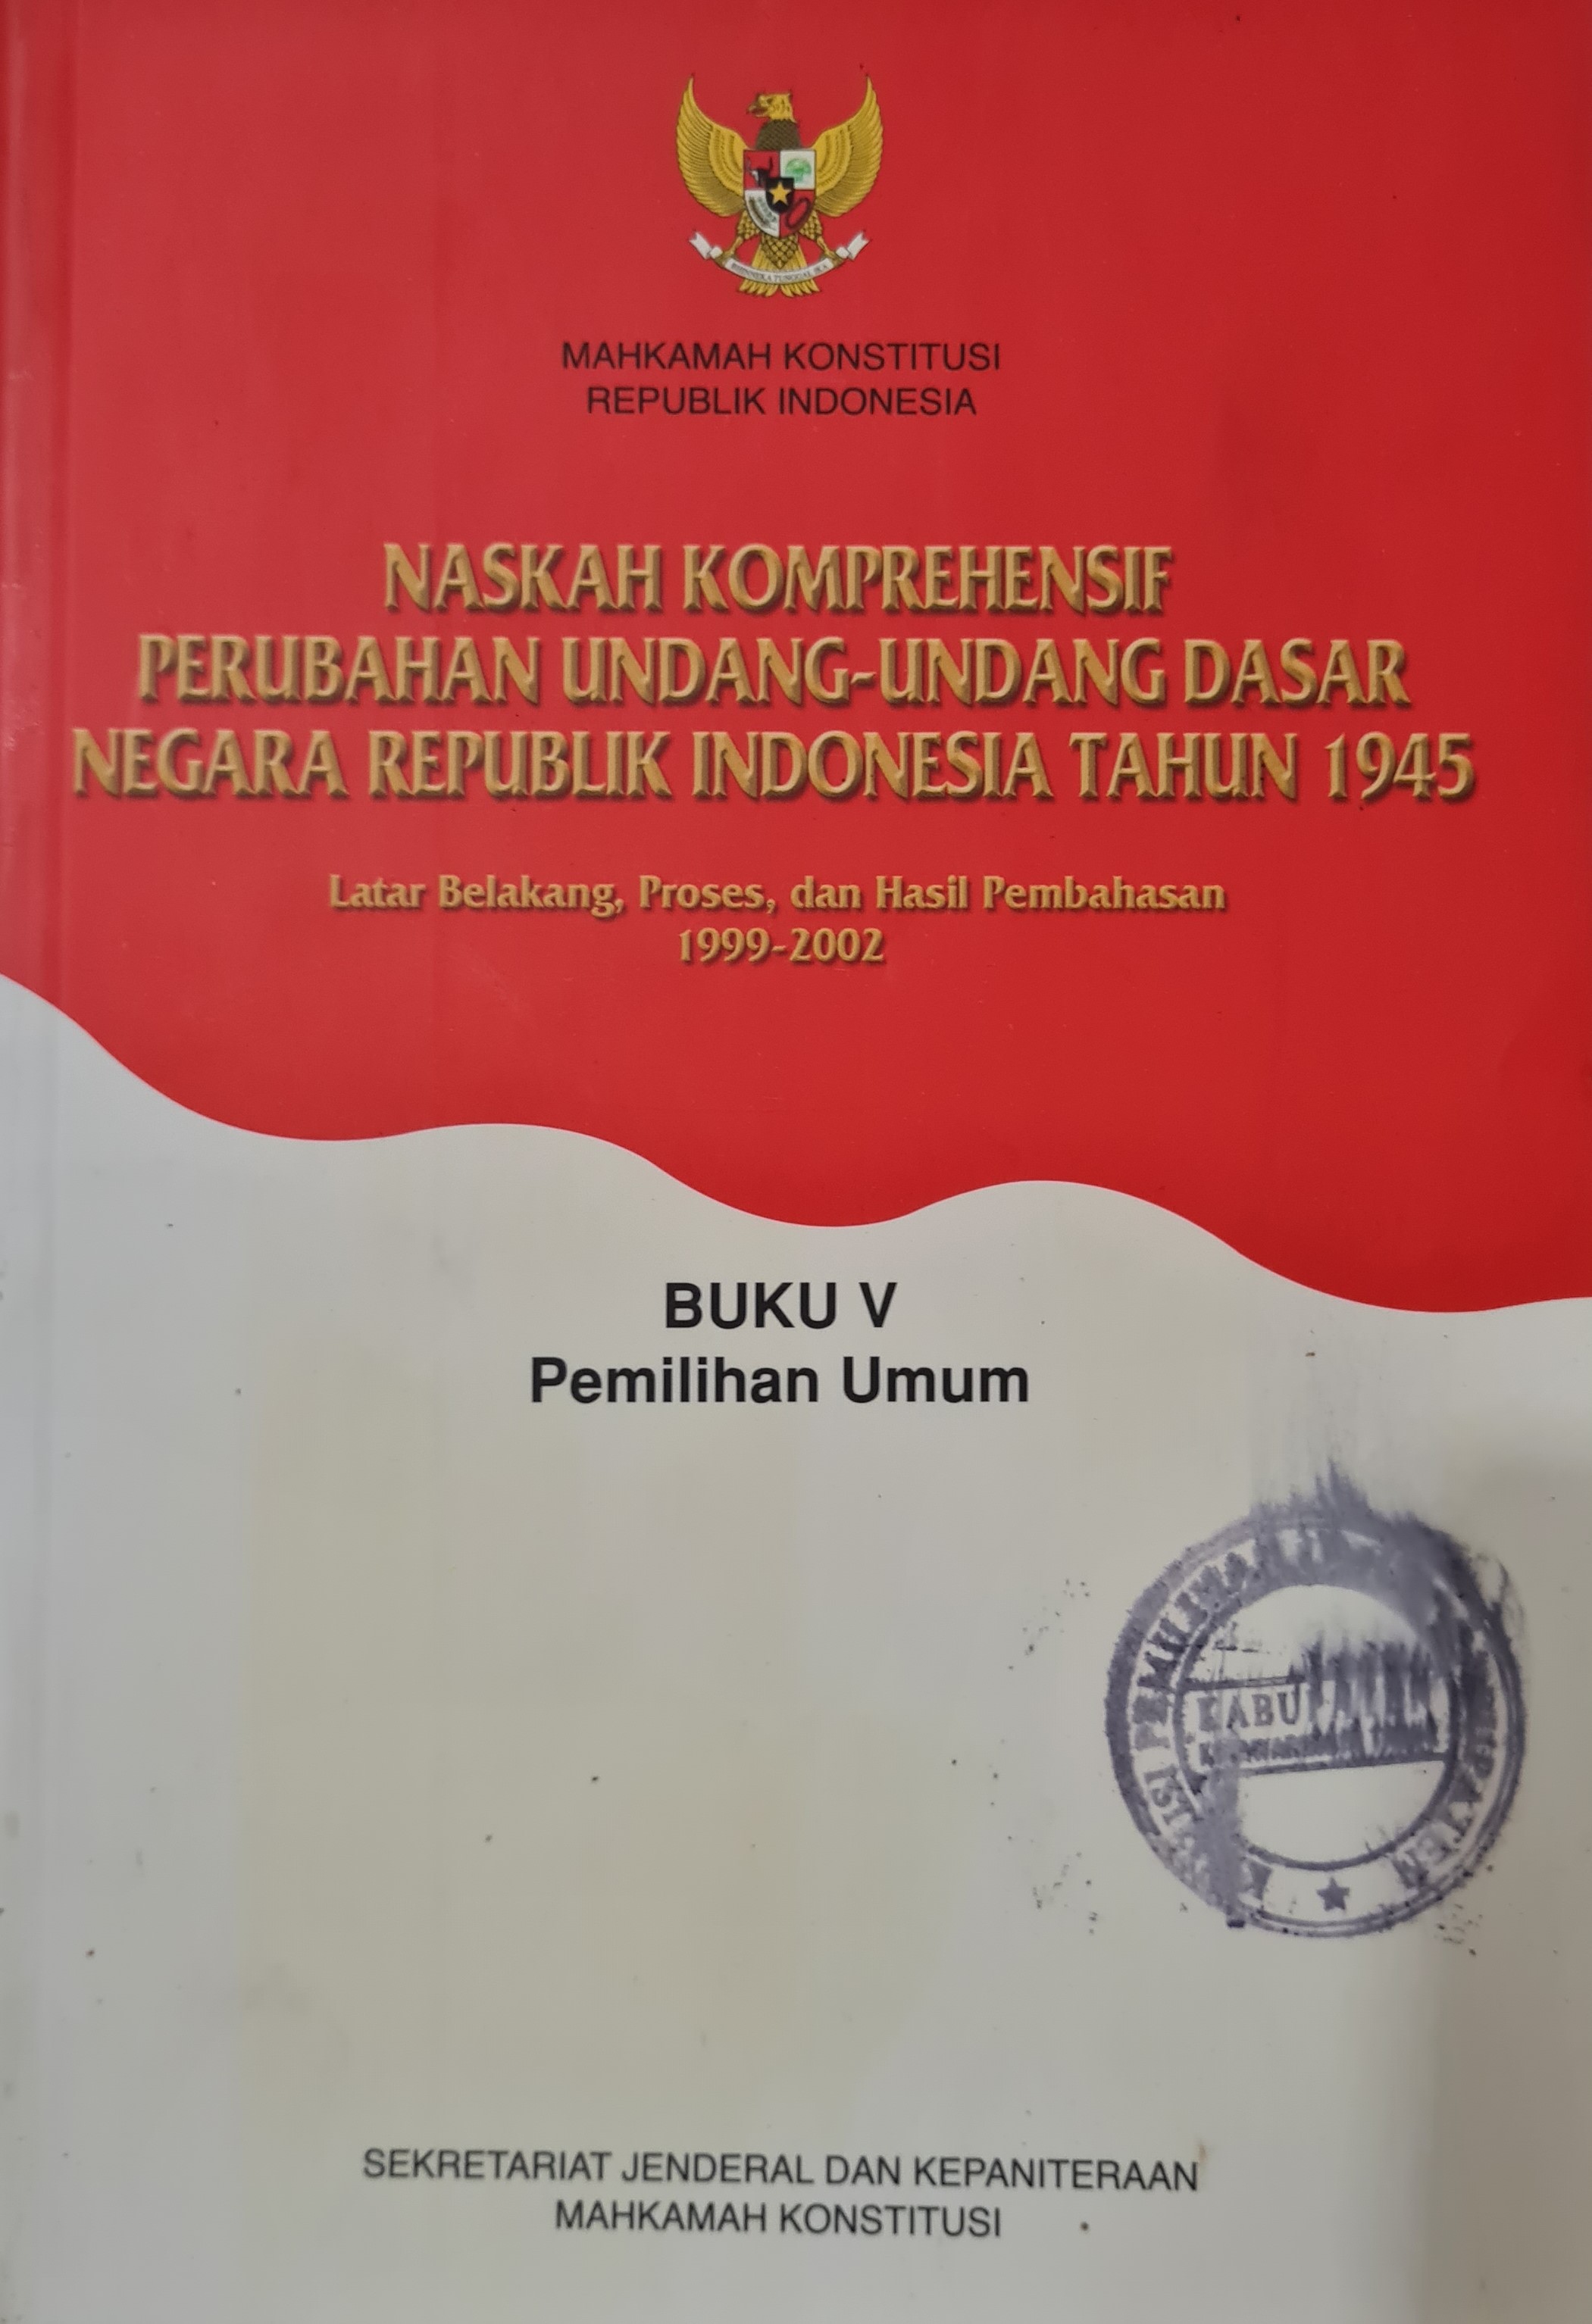 Naskah Komprehensif Perubahan Undang-Undang Dasar Negara Republik Indonesia Tahun 1945 Buku V Pemilihan Umum